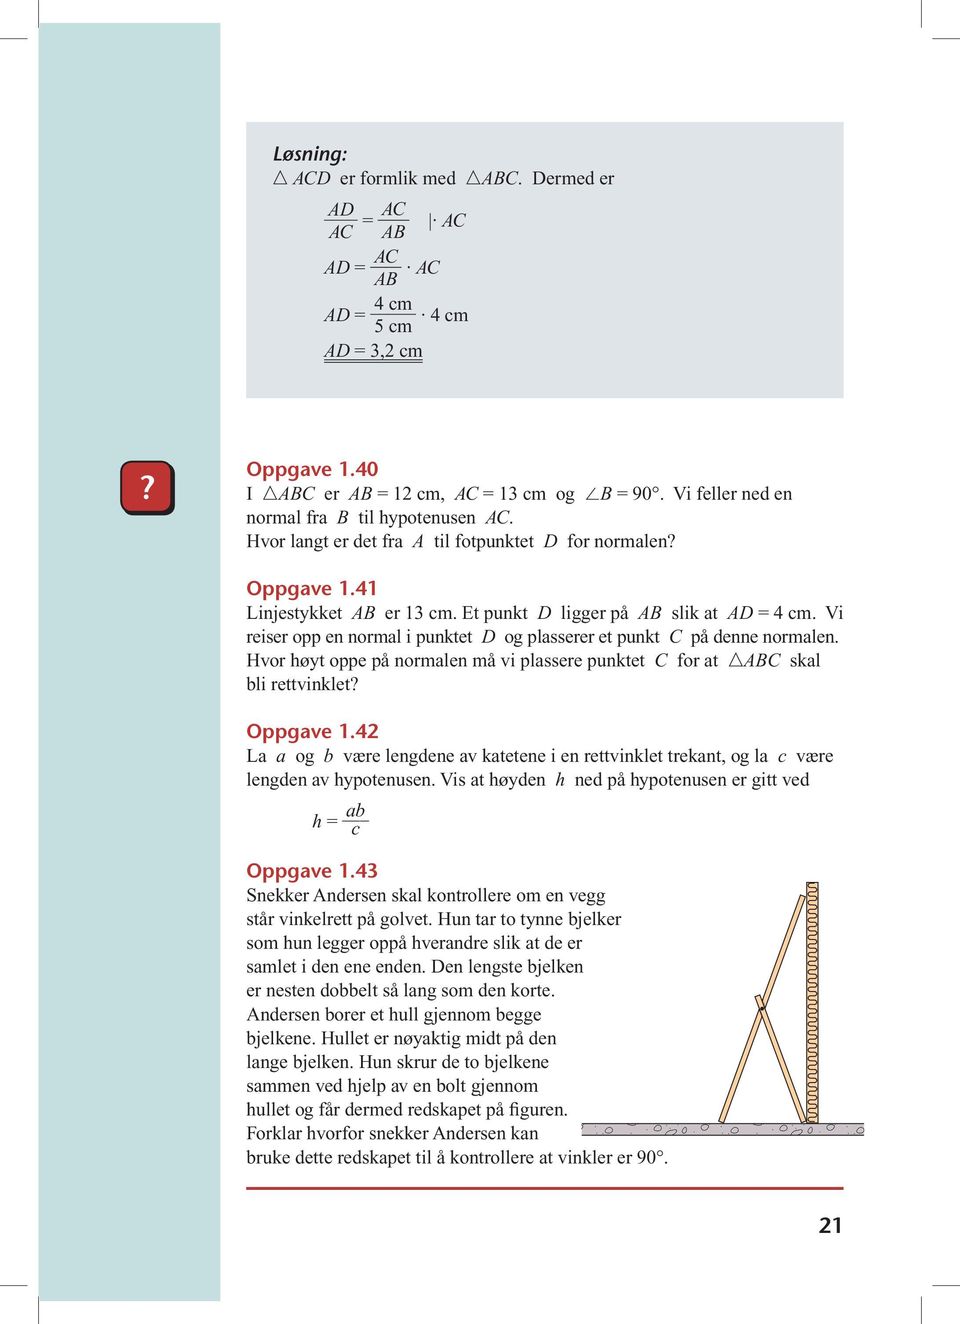 Hvor høyt oppe på normalen må vi plassere punktet for at B skal bli rettvinklet? Oppgave 1.42 La a og b være lengdene av katetene i en rettvinklet trekant, og la c være lengden av hypotenusen.